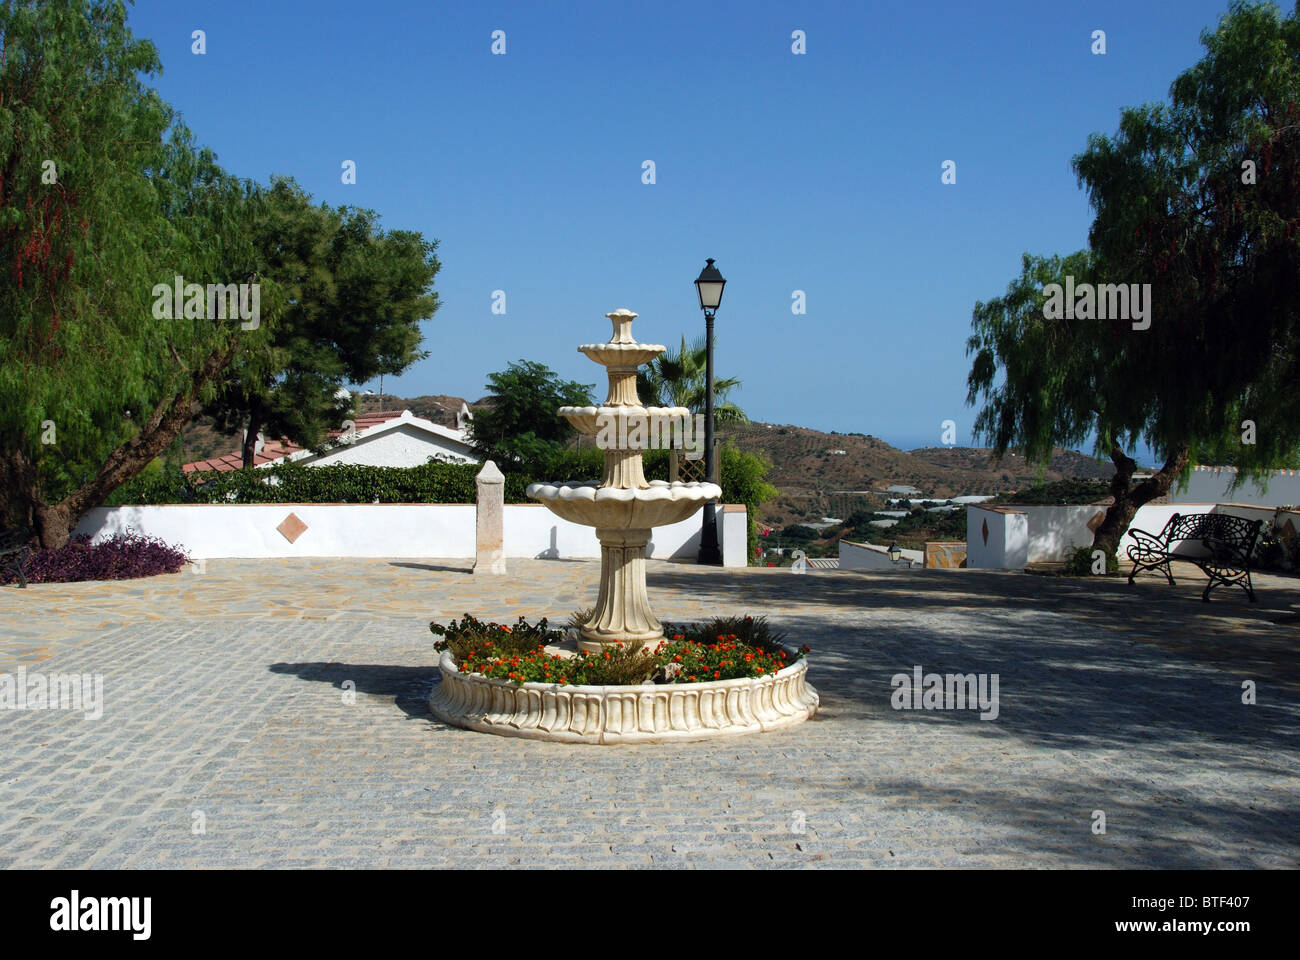 Fountain in a small plaza, whitewashed village (pueblo blanco), Macharaviaya, Costa del Sol, Malaga Province, Andalucia, Spain. Stock Photo